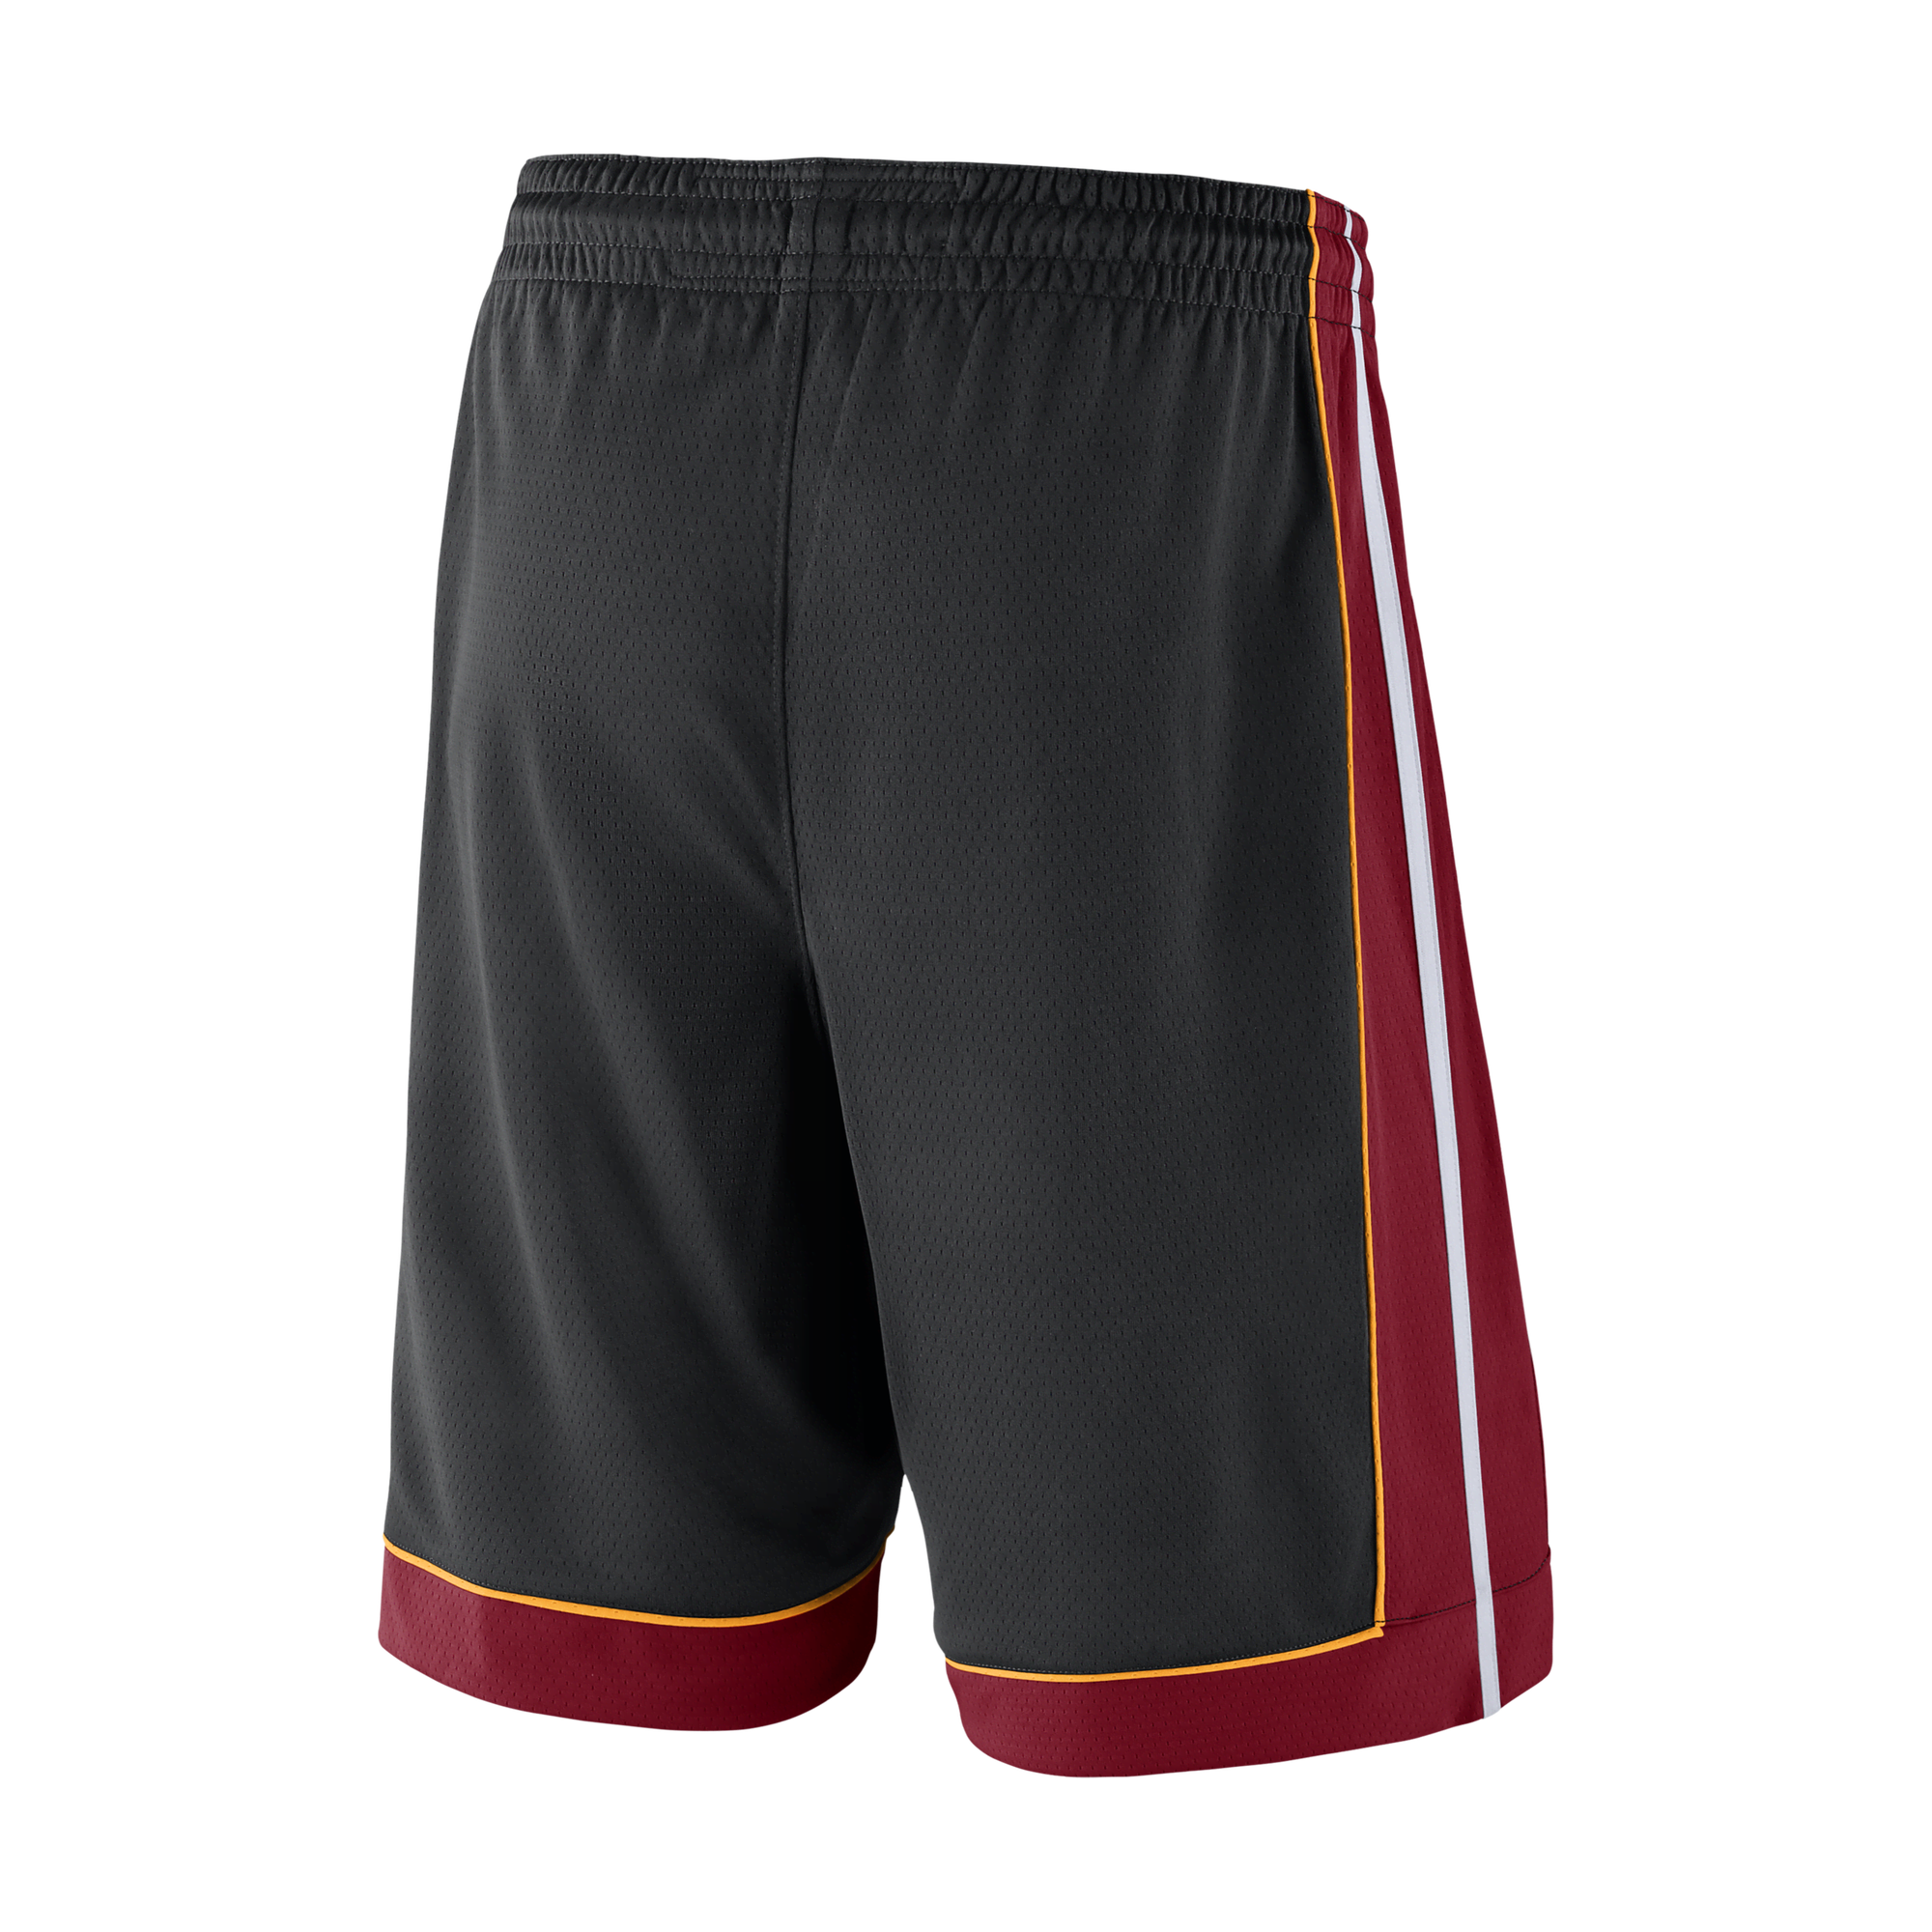 Official Miami Heat Shorts, Basketball Shorts, Gym Shorts